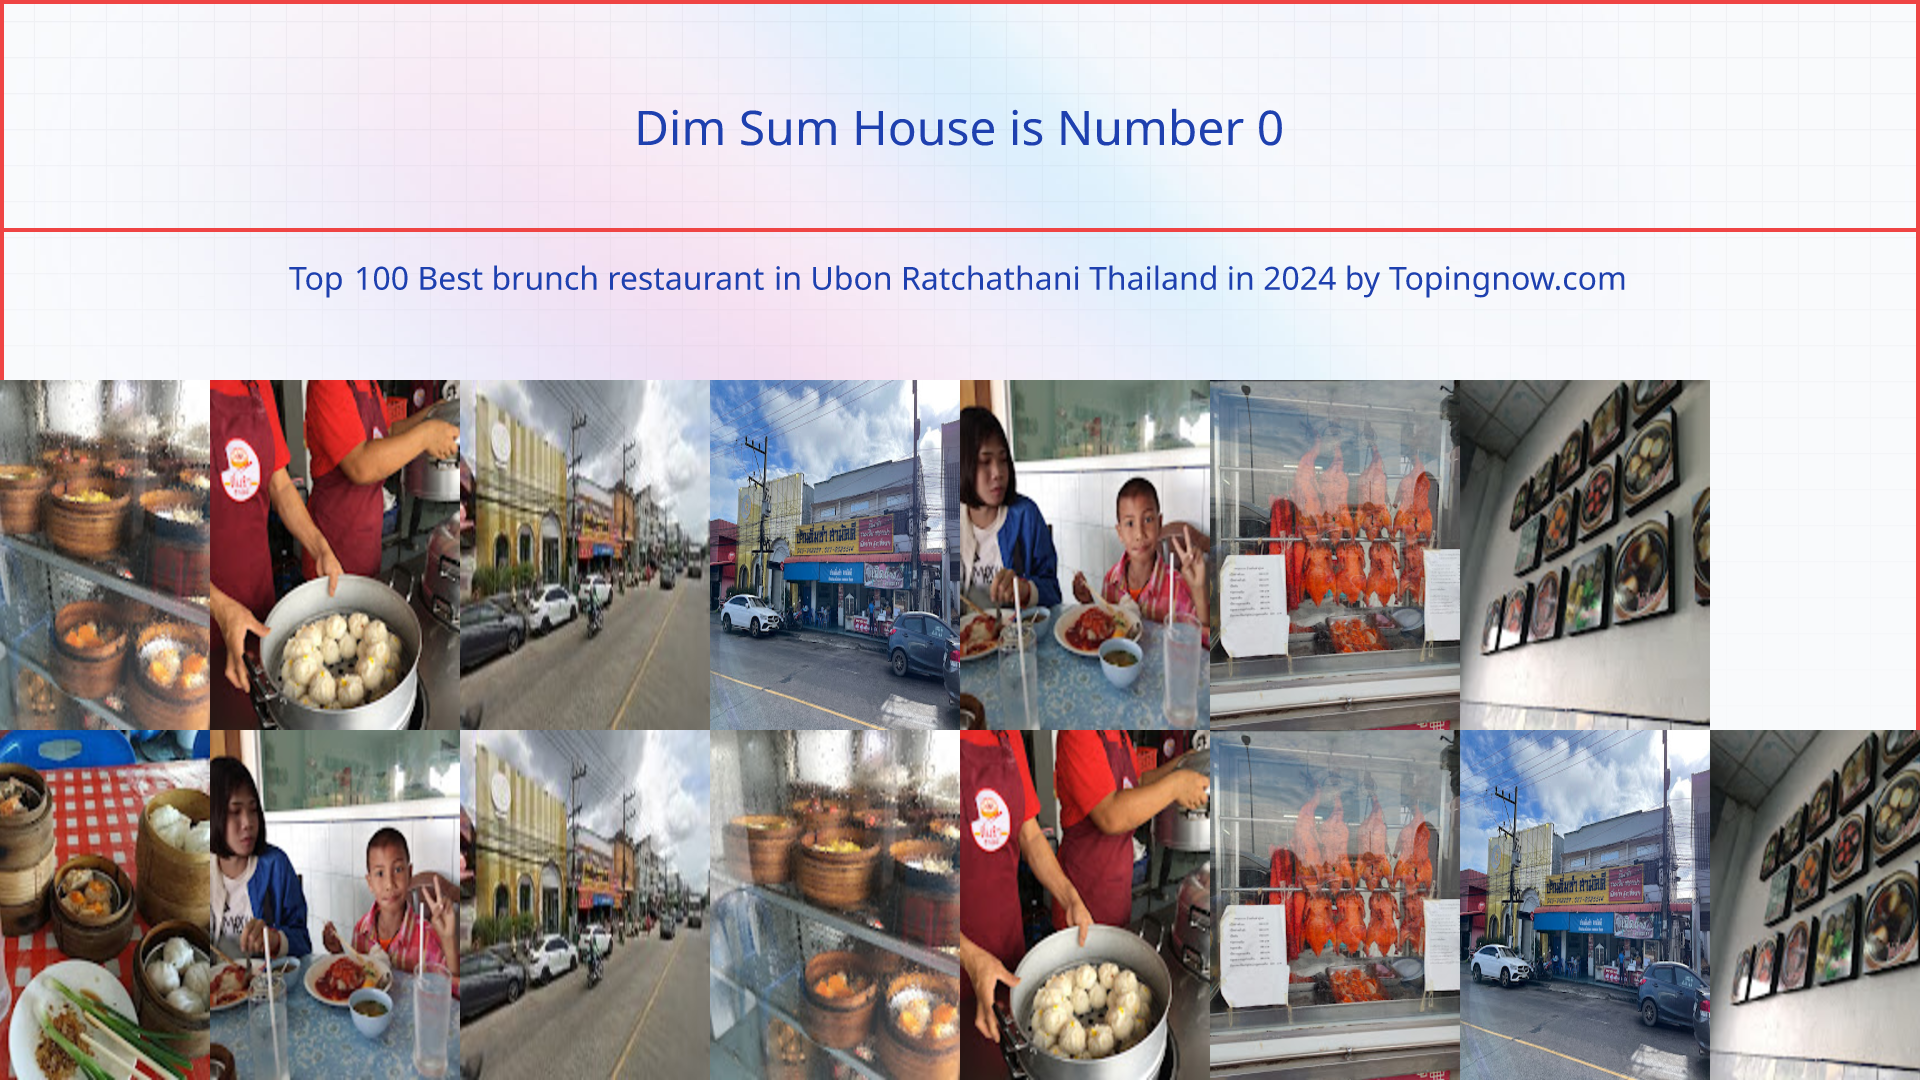 Dim Sum House: Top 100 Best brunch restaurant in Ubon Ratchathani Thailand in 2024